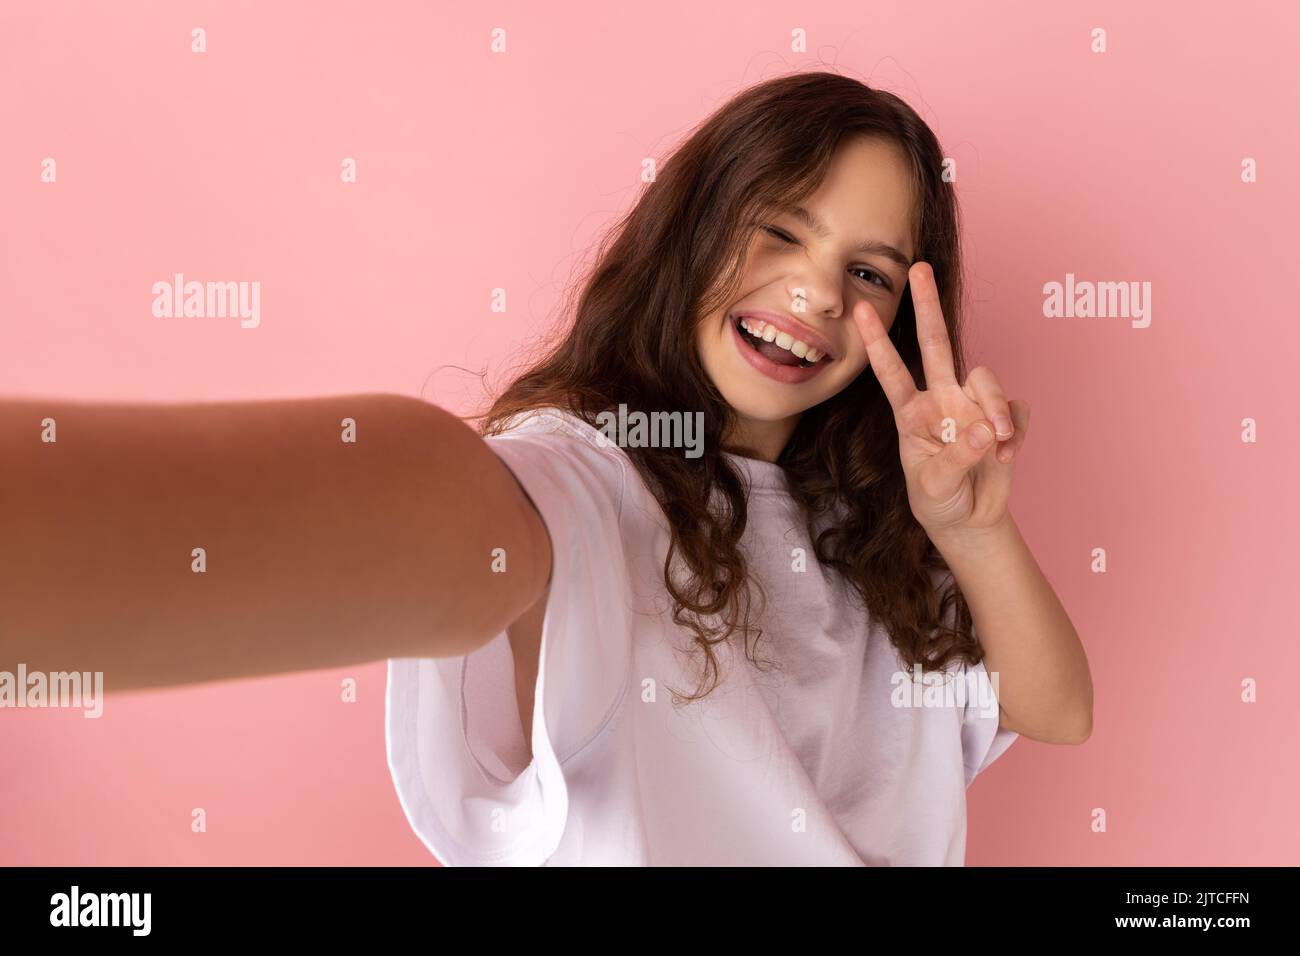 Porträt eines optimistischen kleinen Mädchens in weißem T-Shirt, das Selfie macht, auf den POV der Kamera schaut, aus der Perspektive des Fotos, mit einer Siegesgeste. Innenaufnahme des Studios isoliert auf rosa Hintergrund. Stockfoto